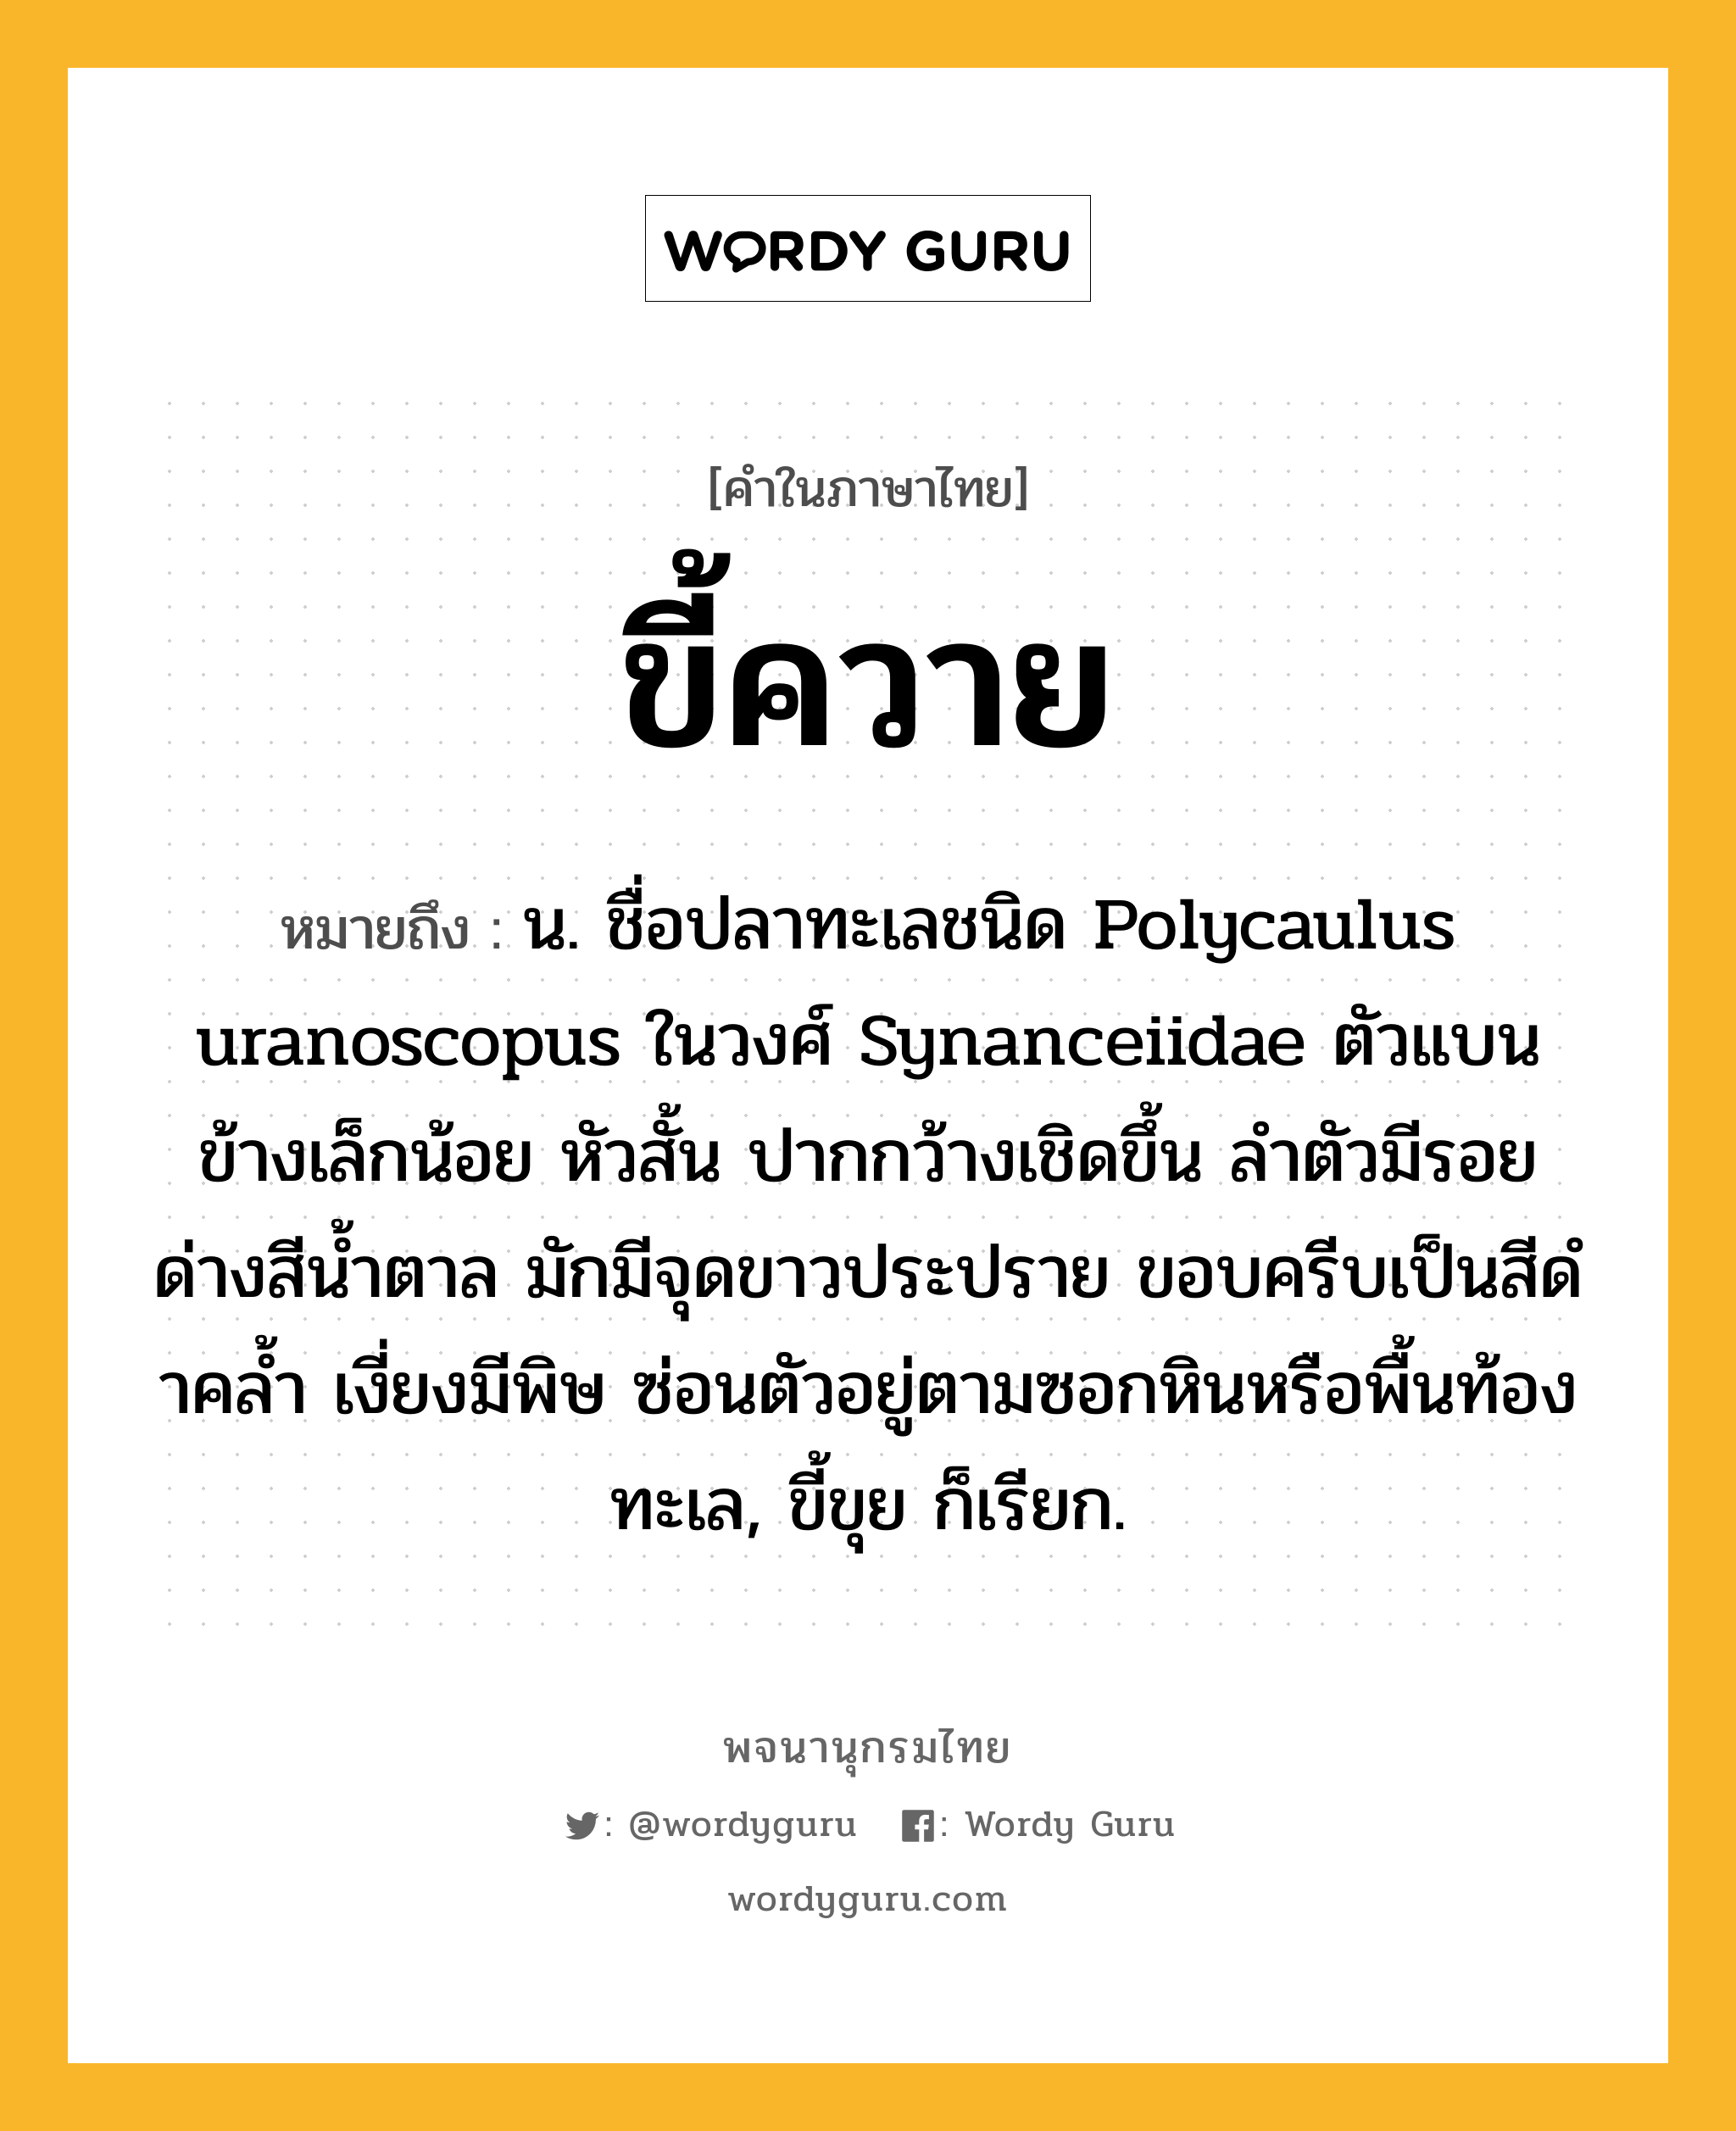 ขี้ควาย ความหมาย หมายถึงอะไร?, คำในภาษาไทย ขี้ควาย หมายถึง น. ชื่อปลาทะเลชนิด Polycaulus uranoscopus ในวงศ์ Synanceiidae ตัวแบนข้างเล็กน้อย หัวสั้น ปากกว้างเชิดขึ้น ลําตัวมีรอยด่างสีนํ้าตาล มักมีจุดขาวประปราย ขอบครีบเป็นสีดําคลํ้า เงี่ยงมีพิษ ซ่อนตัวอยู่ตามซอกหินหรือพื้นท้องทะเล, ขี้ขุย ก็เรียก.